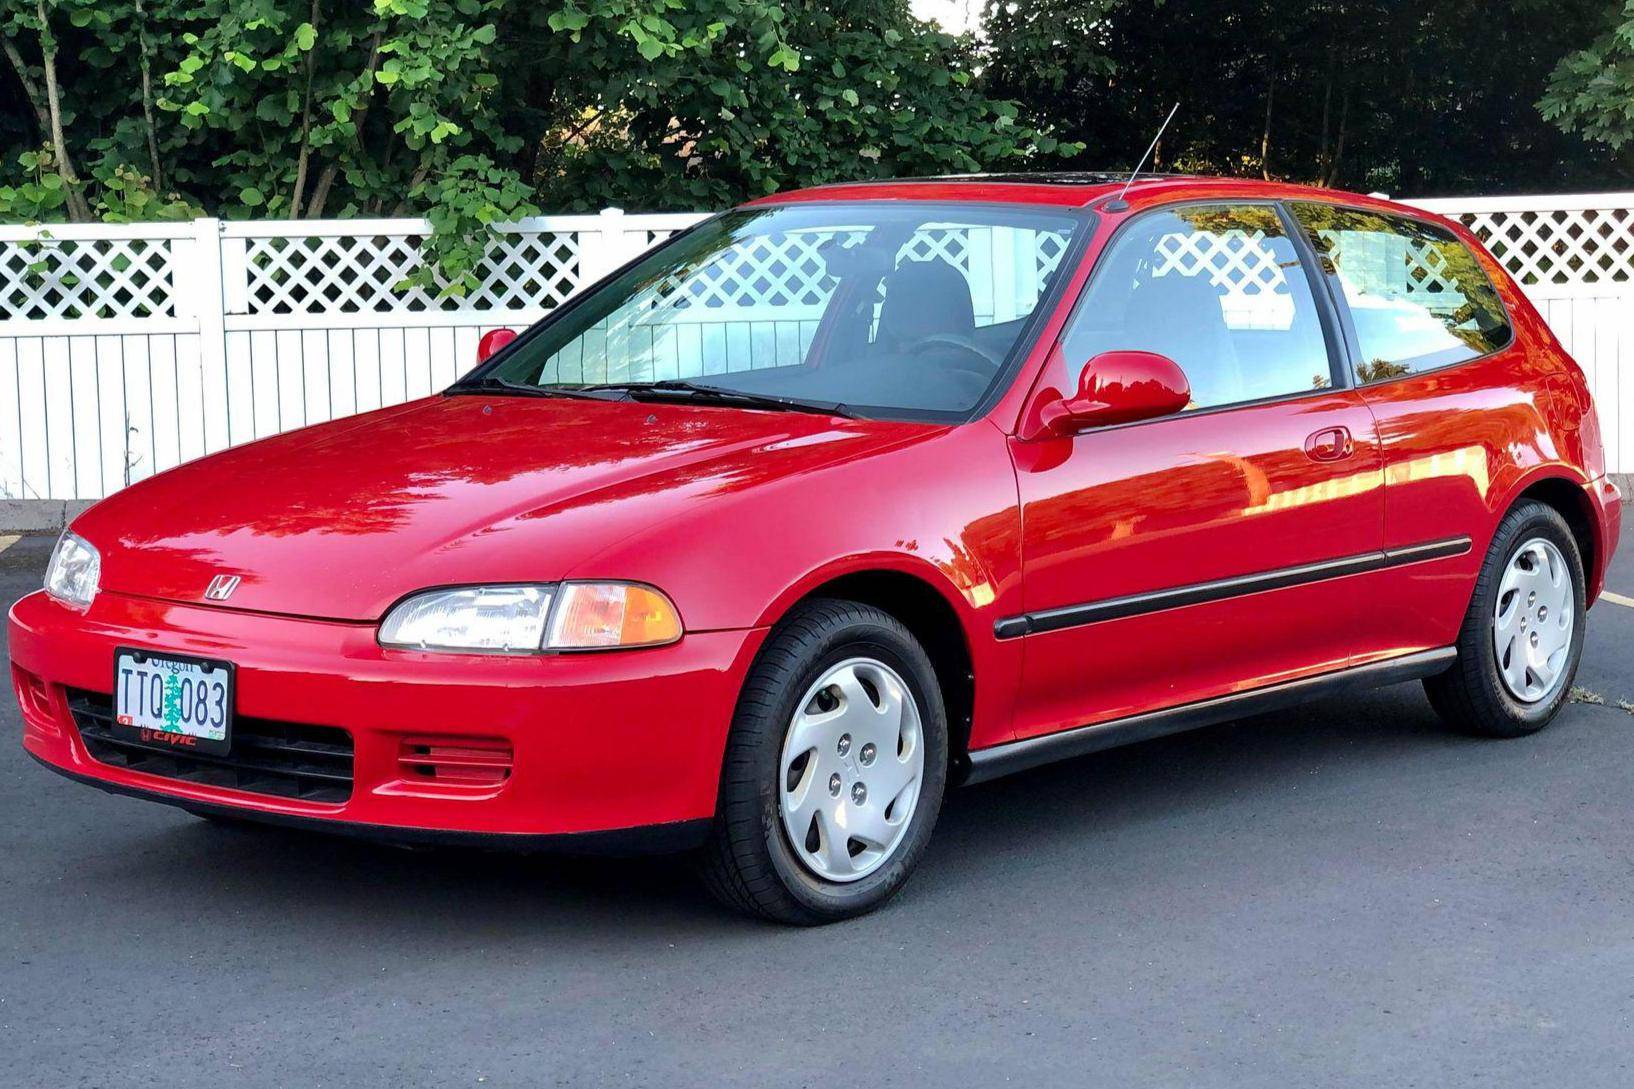 redde skat Forbedring 1994 Honda Civic Si Hatchback auction - Cars & Bids